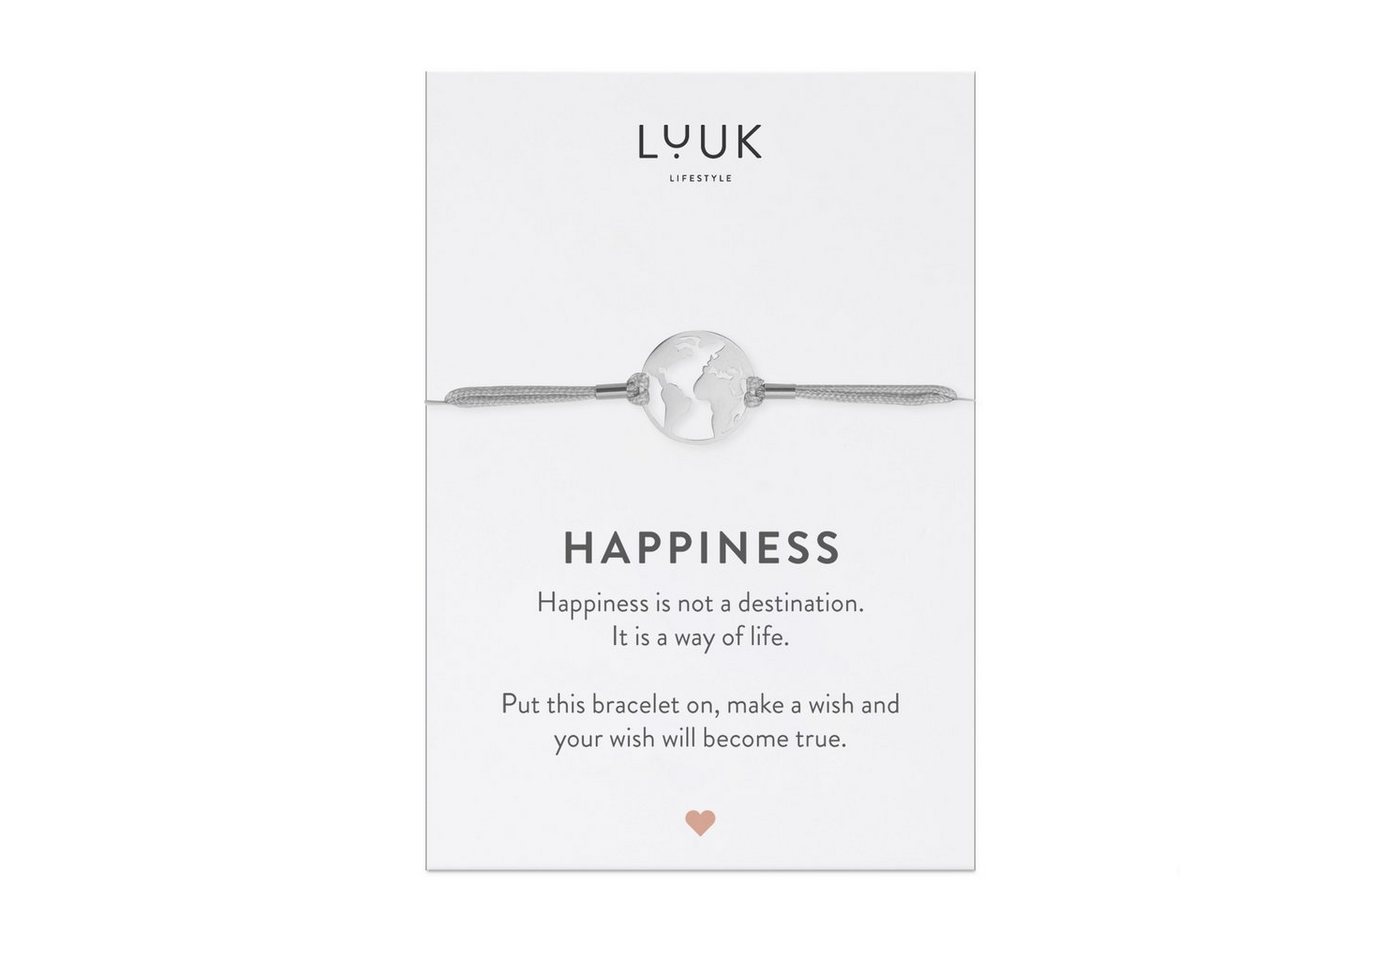 LUUK LIFESTYLE Freundschaftsarmband Weltkugel, handmade, mit Happiness Spruchkarte von LUUK LIFESTYLE